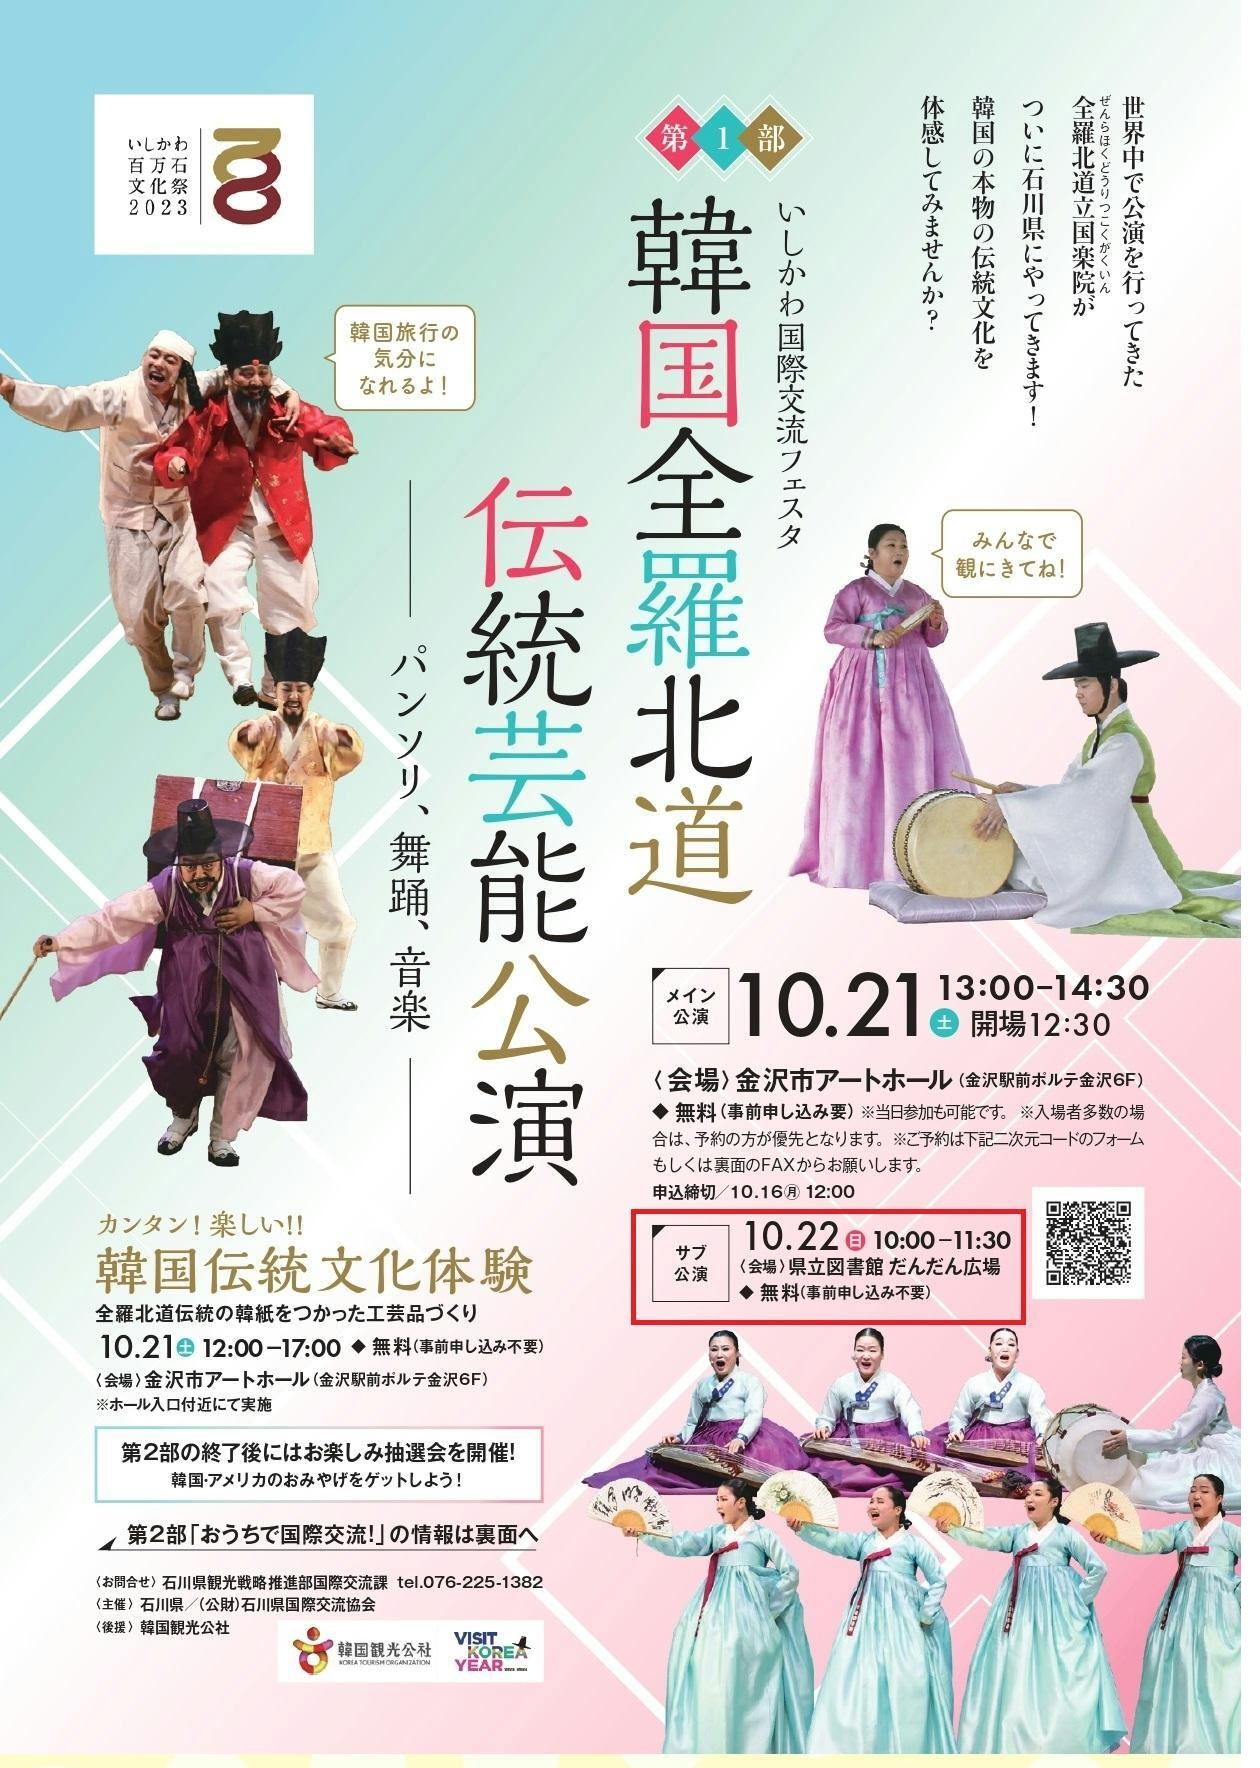 【10月22日】韓国全羅北道伝統芸能公演―パンソリ、舞踊、音楽―（サブ公演）